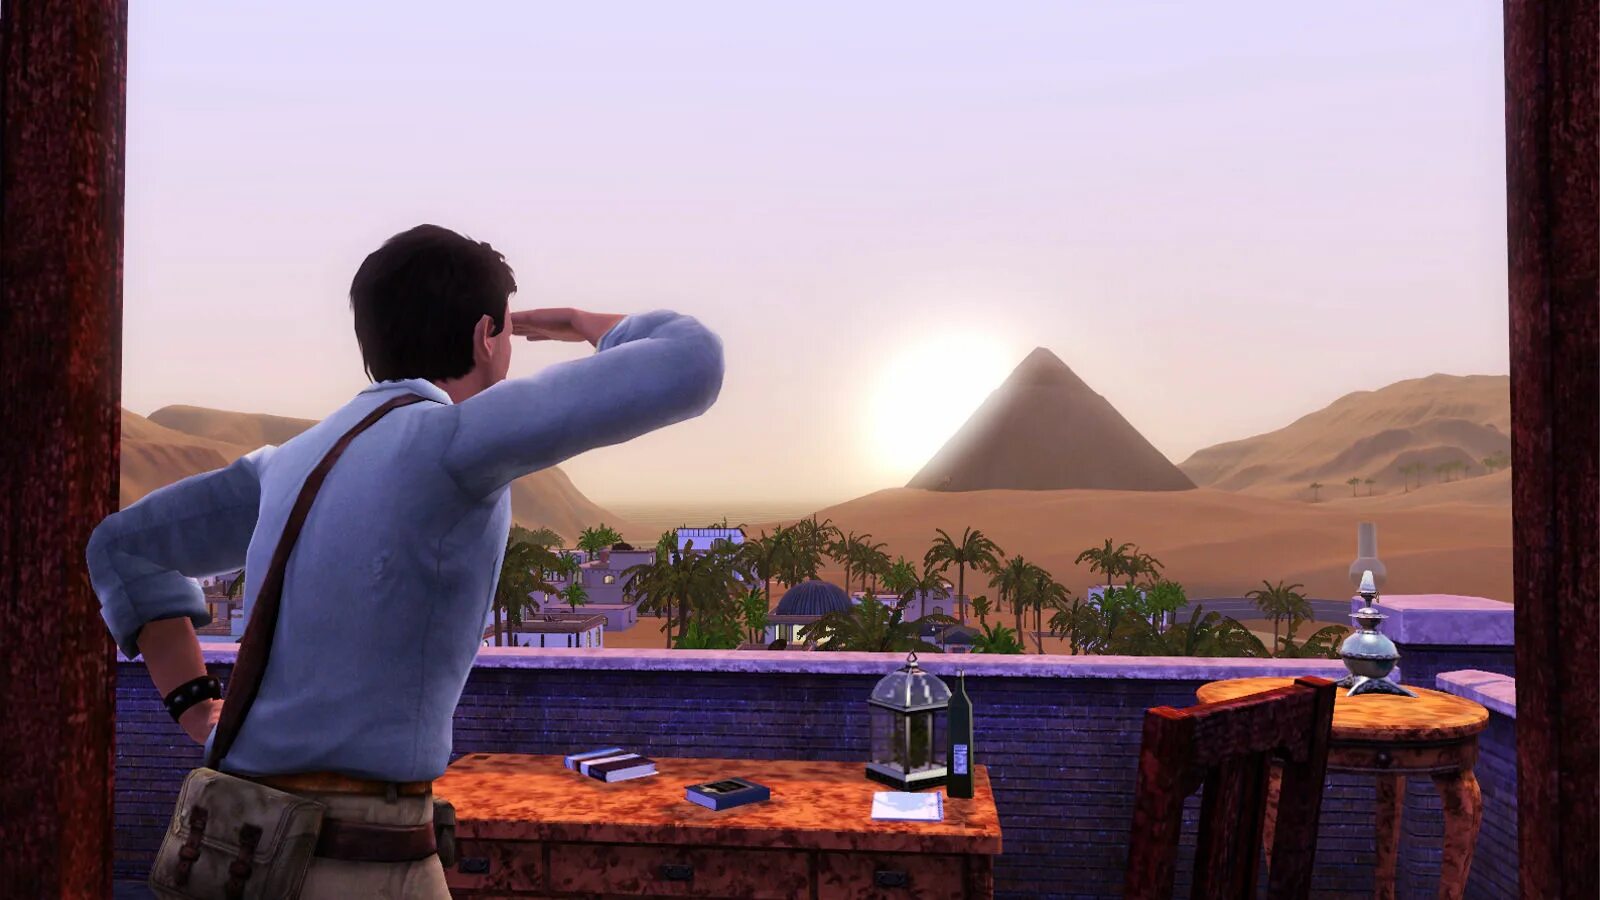 Sims adventures